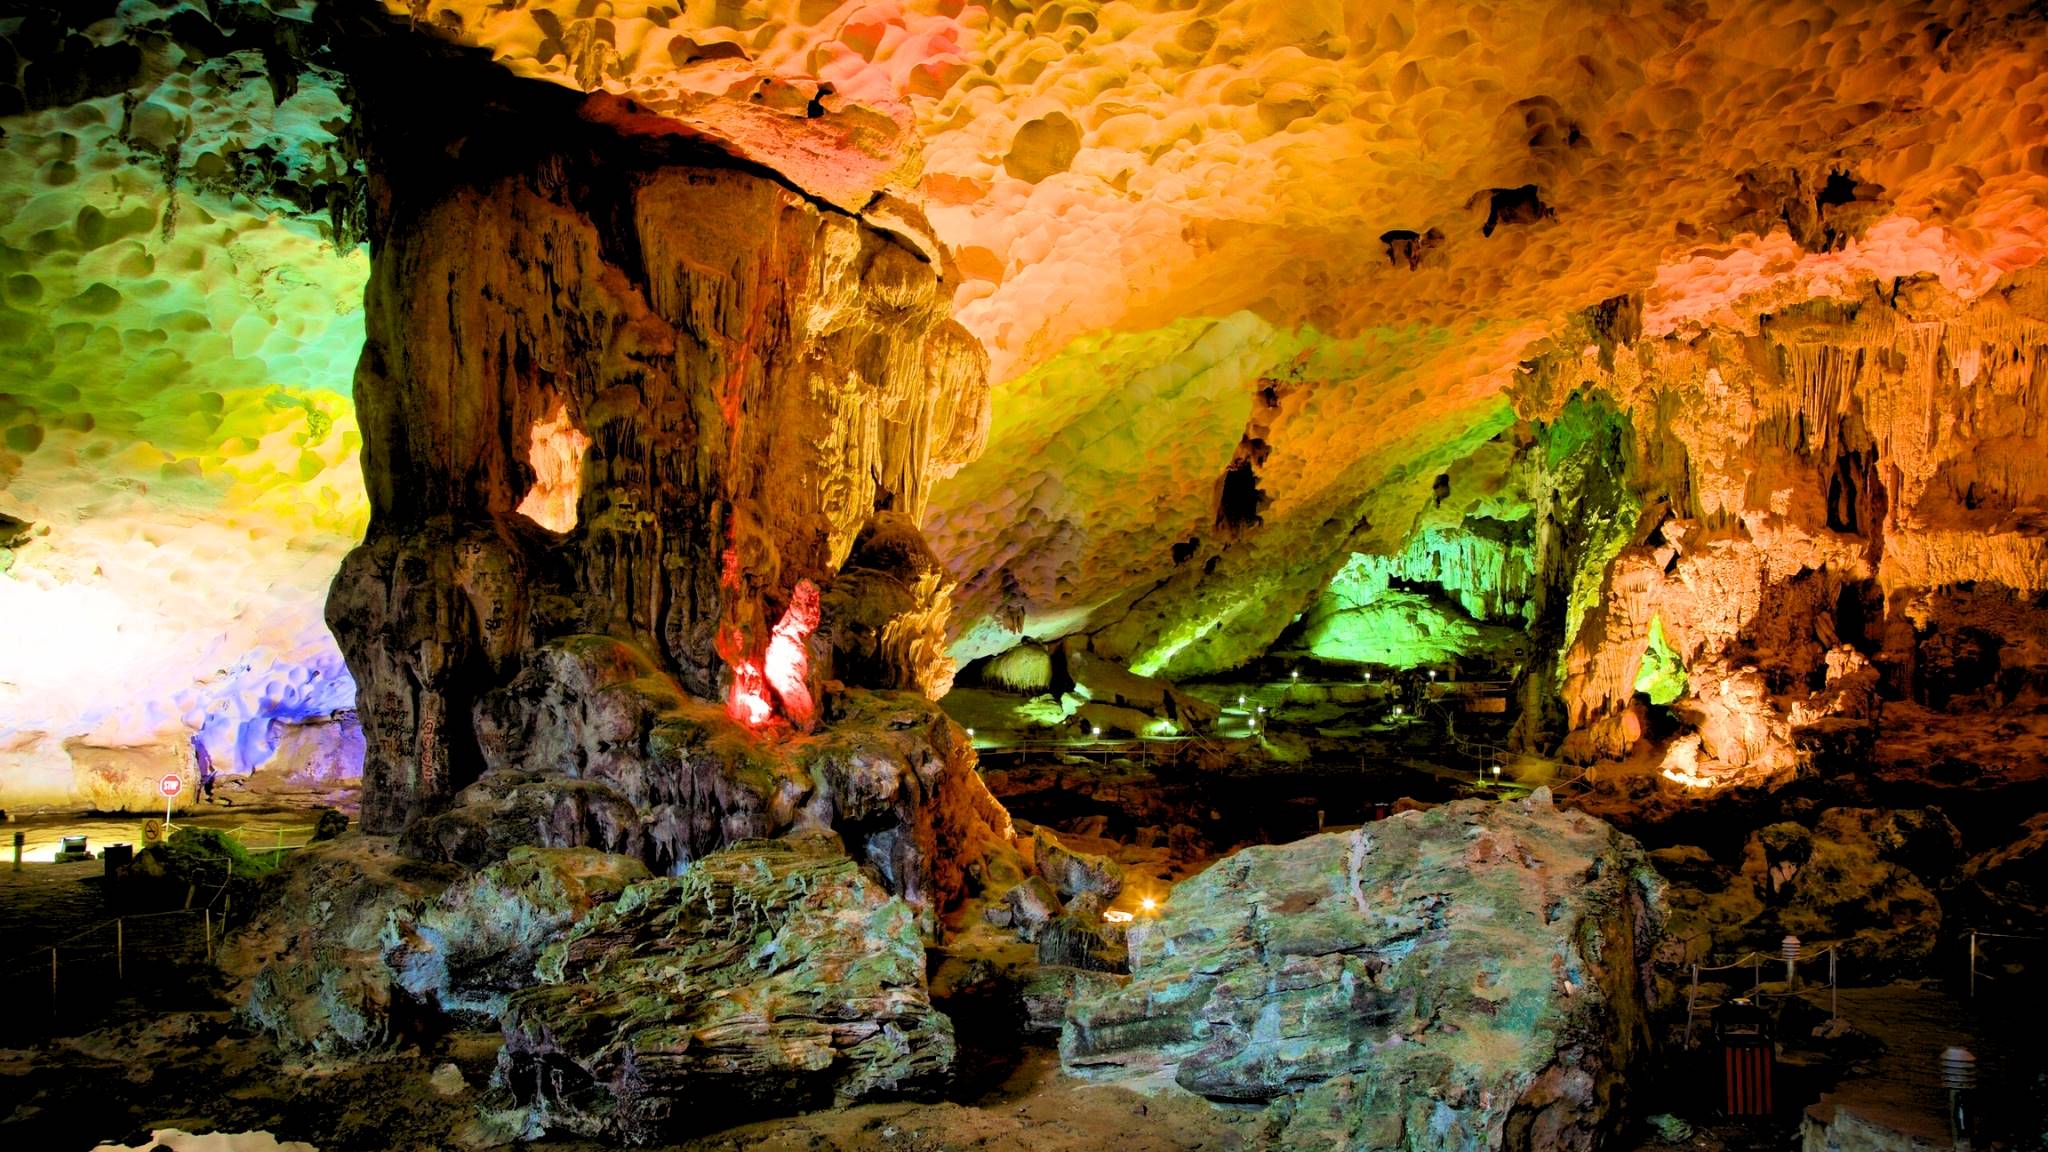 Explore Sung Sot cave